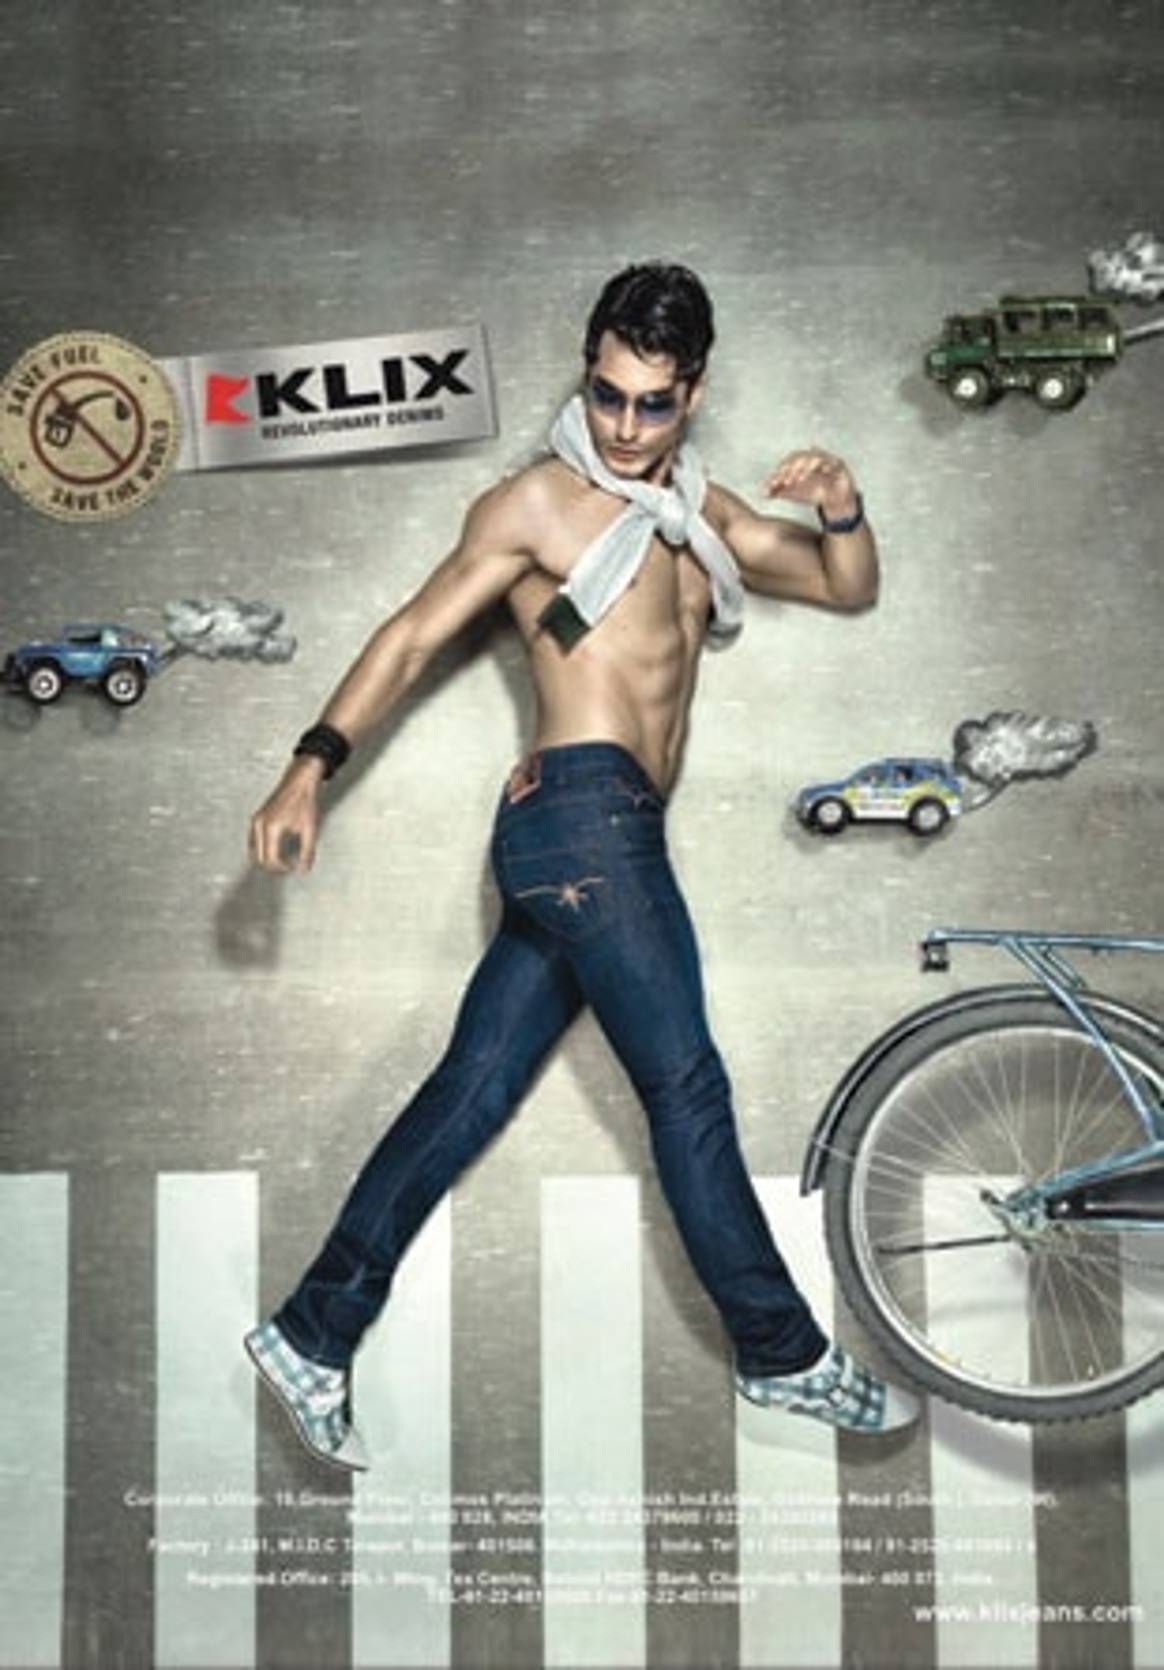 Klix to add shirts to its product range next year